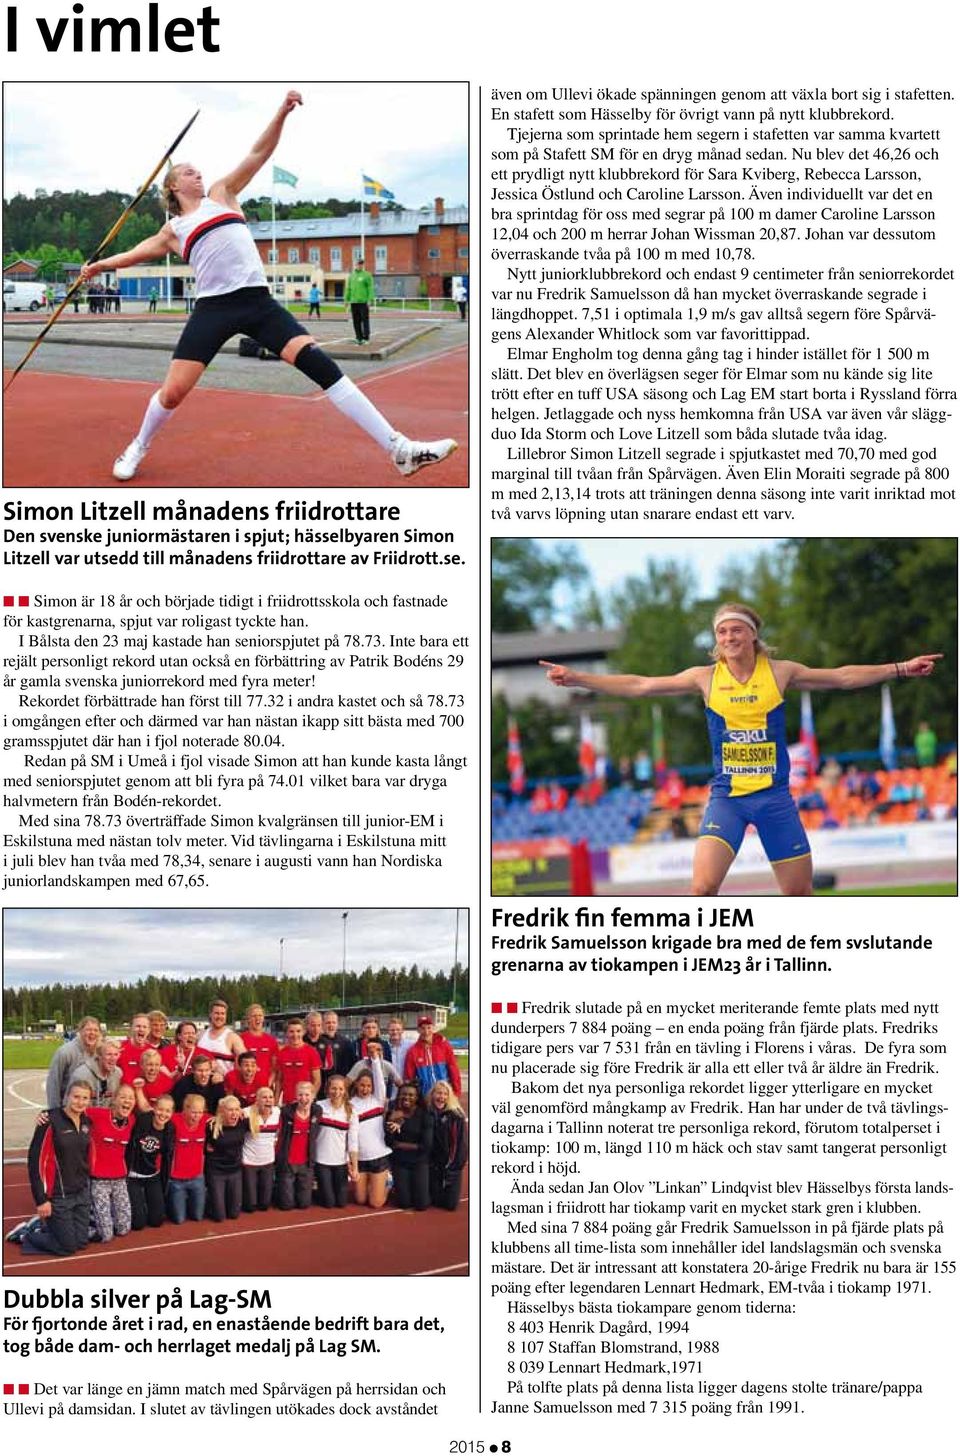 I Bålsta den 23 maj kastade han seniorspjutet på 78.73. Inte bara ett rejält personligt rekord utan också en förbättring av Patrik Bodéns 29 år gamla svenska juniorrekord med fyra meter!